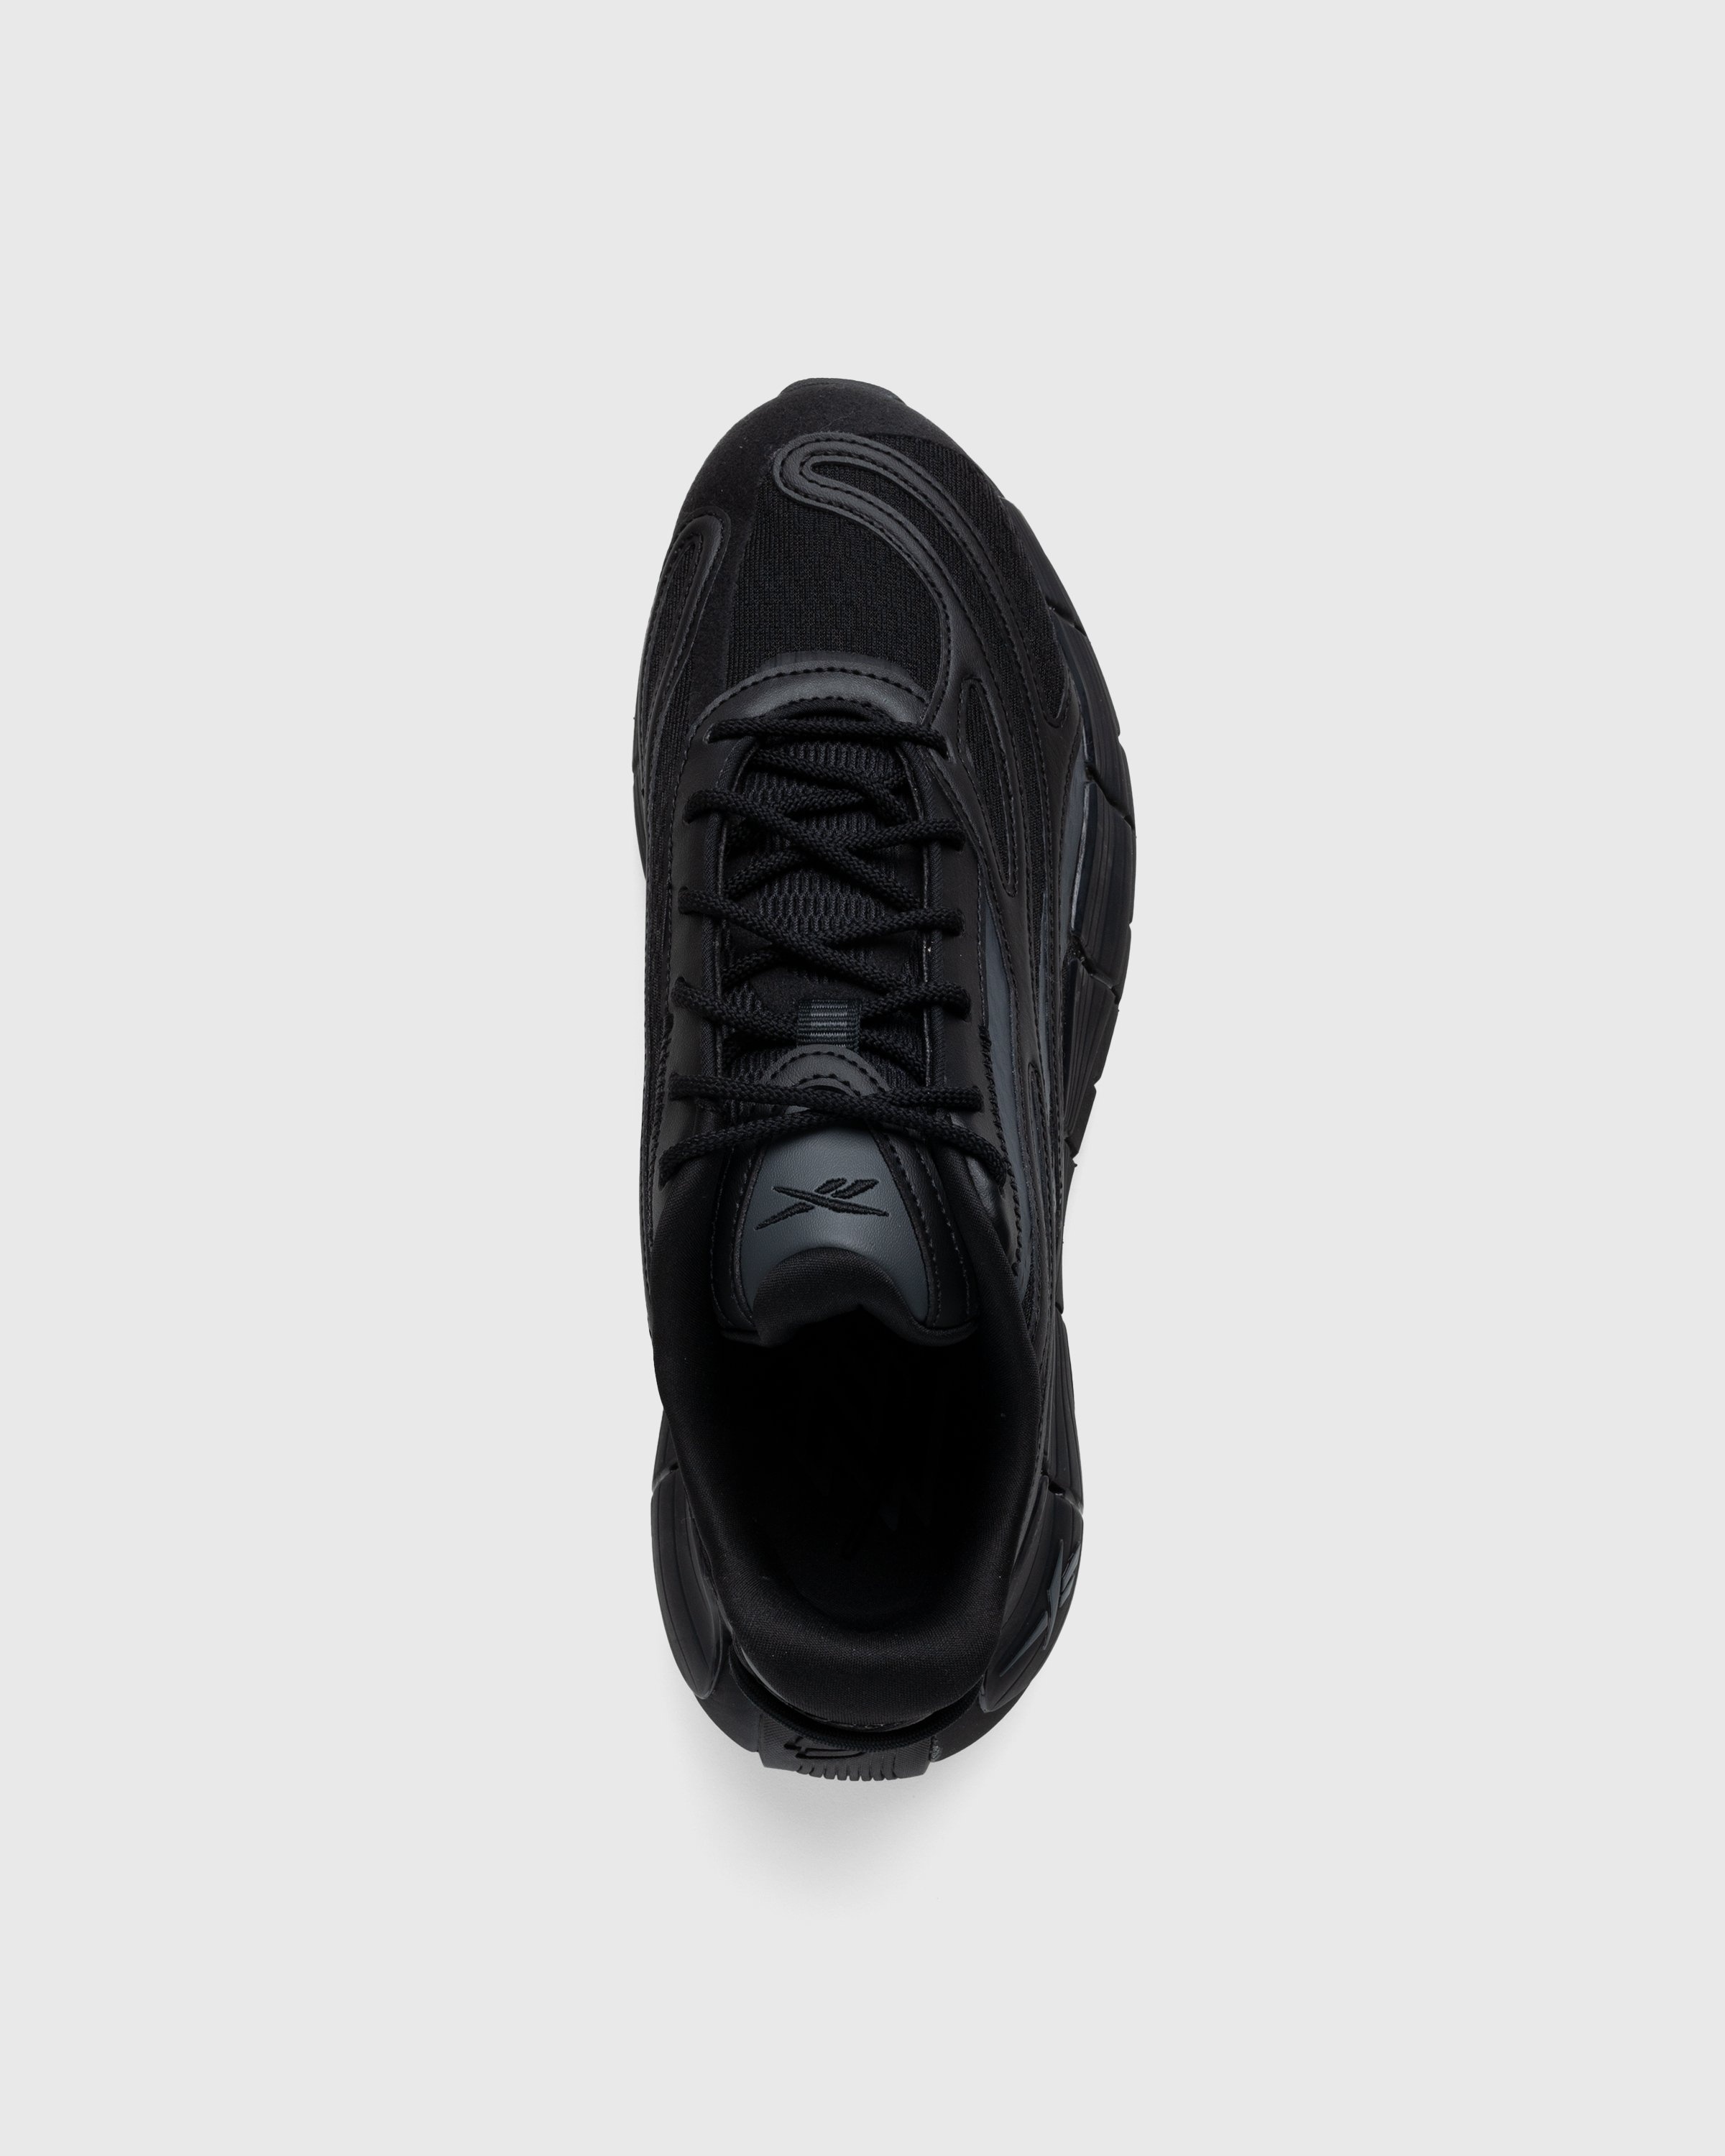 Reebok – Zig Kinetica 2.5 Black - Low Top Sneakers - Black - Image 4